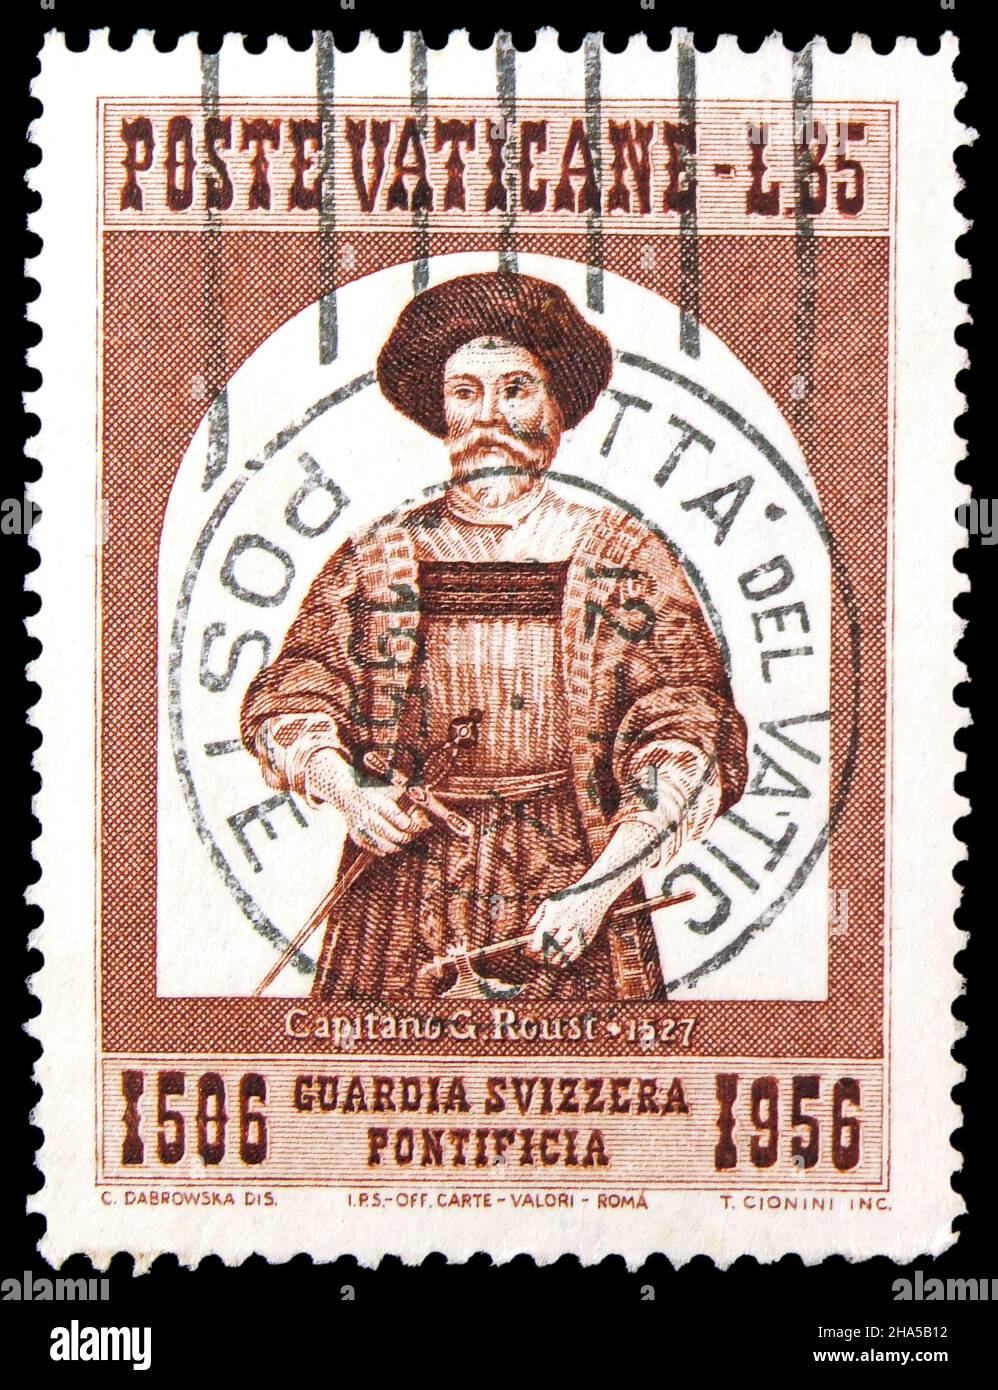 MOSKAU, RUSSLAND - 4. NOVEMBER 2021: Die im Vatikan gedruckte Briefmarke zeigt Captain Roust, 450th. Jahrestag der Serie der Schweizer Garde, um 1956 Stockfoto